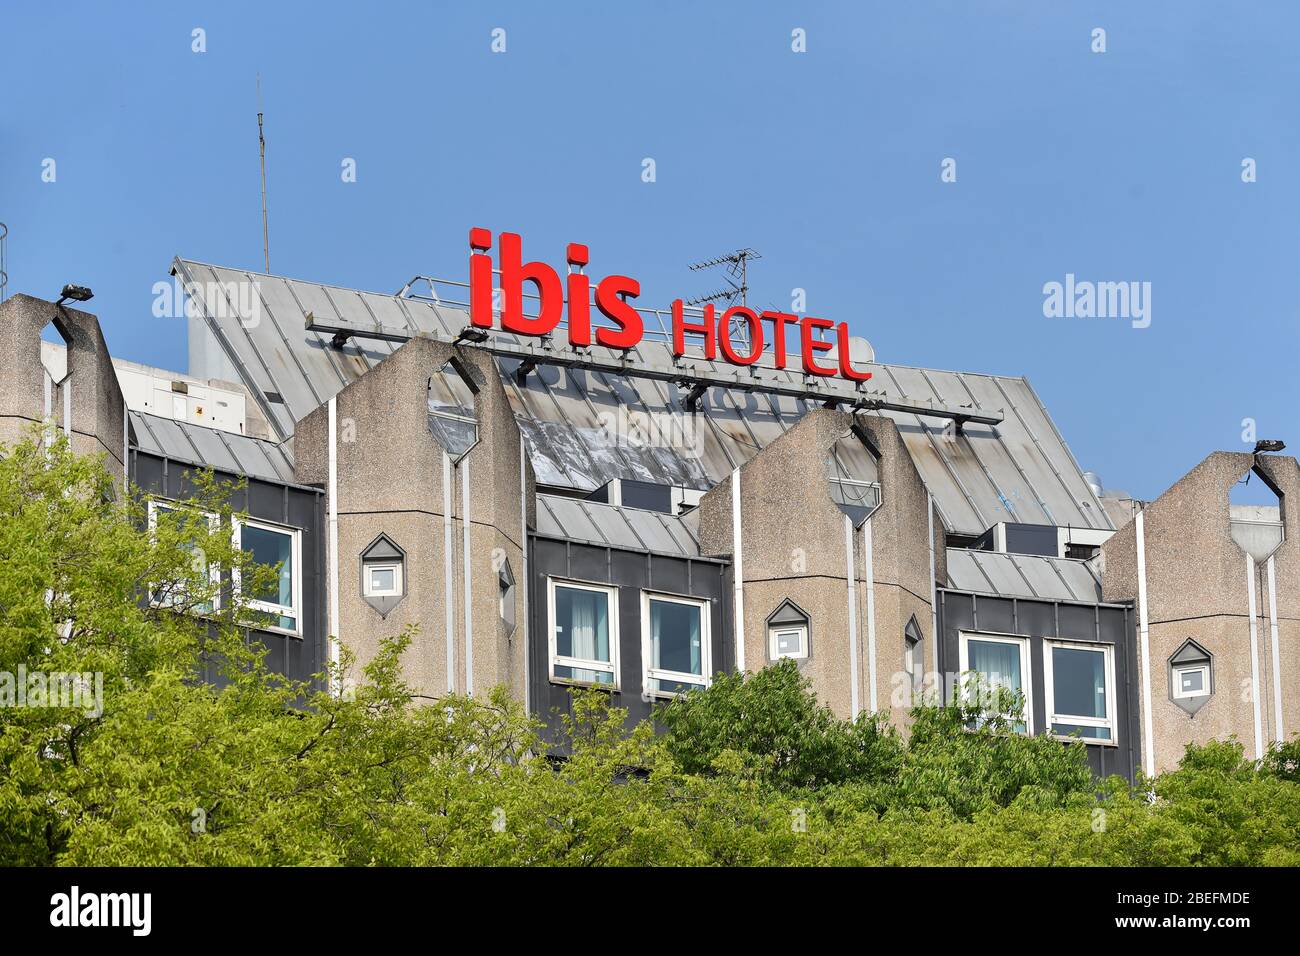 Hotel chain paris immagini e fotografie stock ad alta risoluzione - Alamy